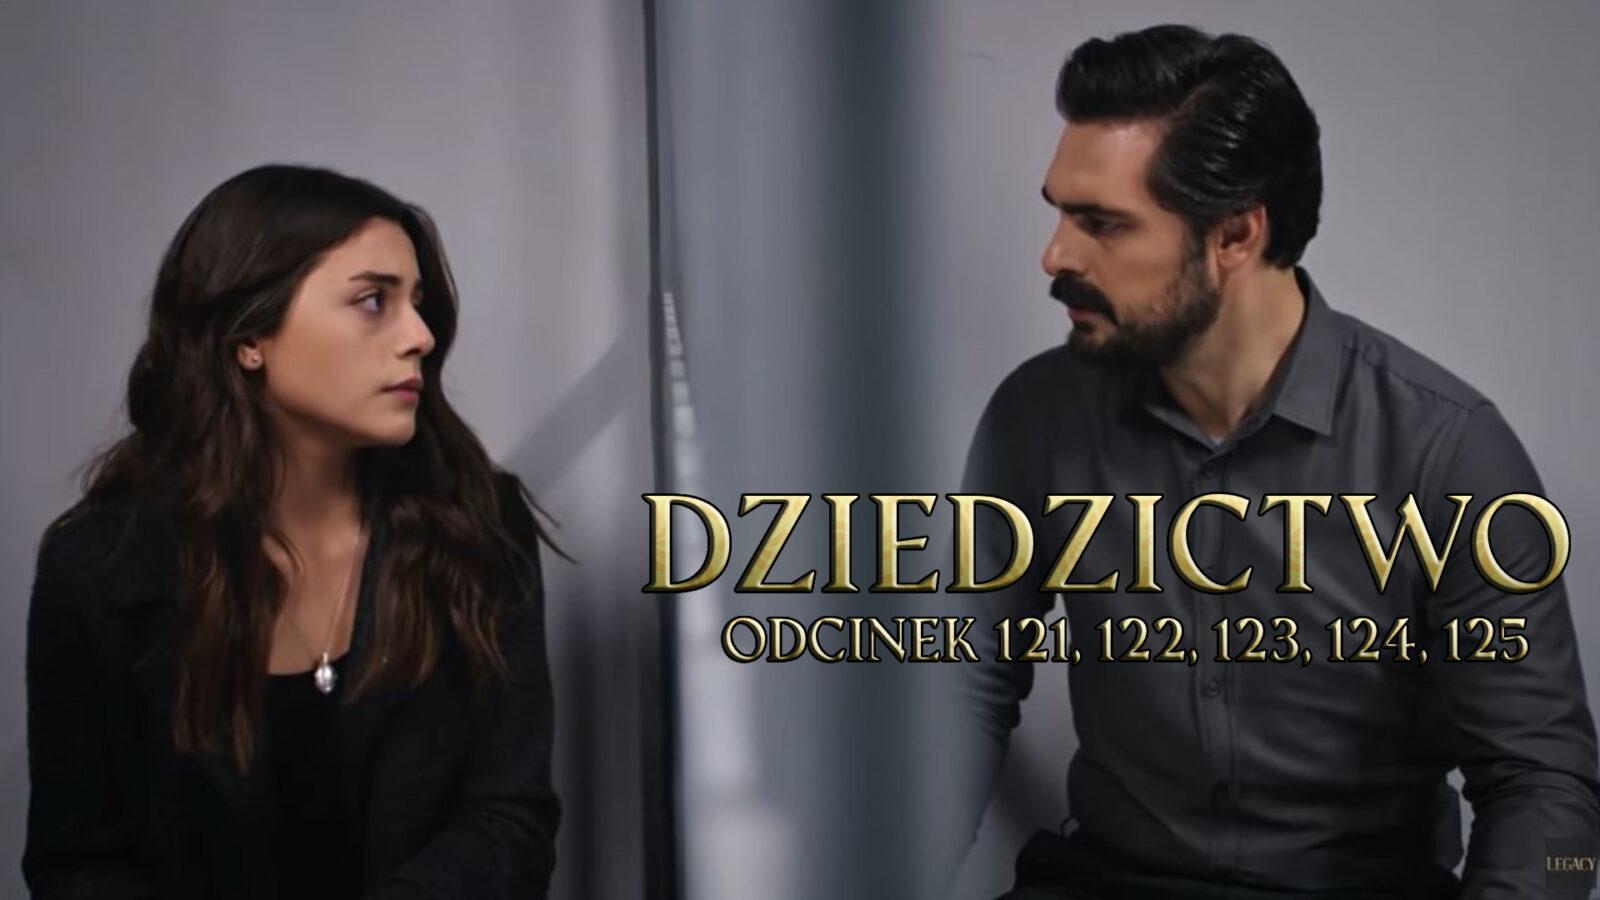 Dziedzictwo odcinki 121, 122, 123, 124, 125 online ZA DARMO – Oglądaj serial turecki DZIEDZICTWO na TVP VOD